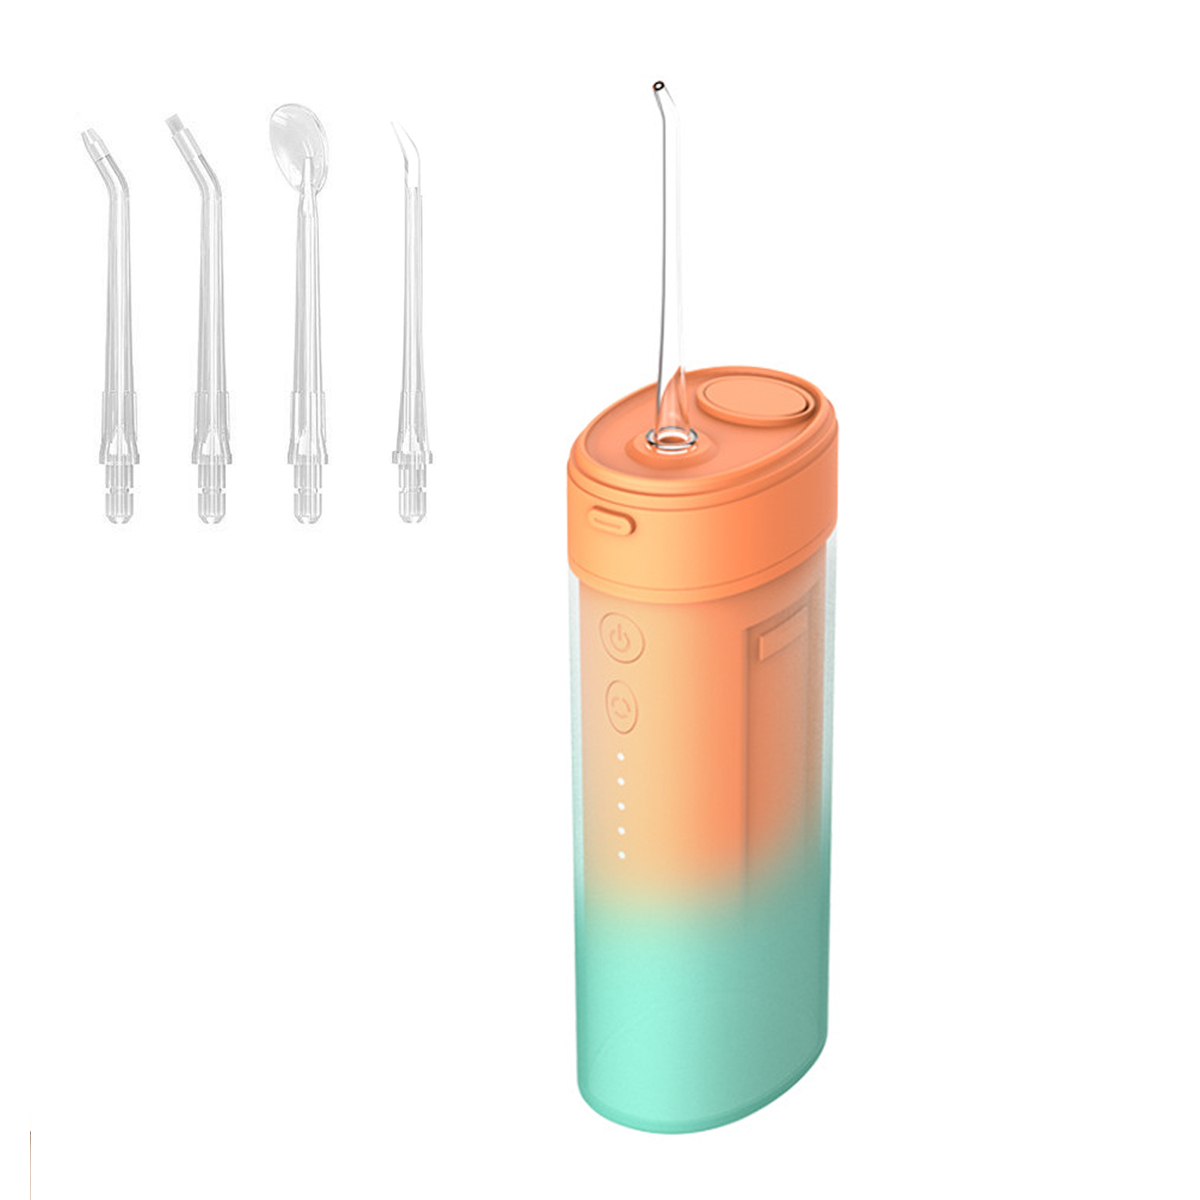 IPX7, 4 Oral Modi/4 Elektrische, Düsen, Care KINSI Munddusche Dentalwerkzeug Zahnreiniger